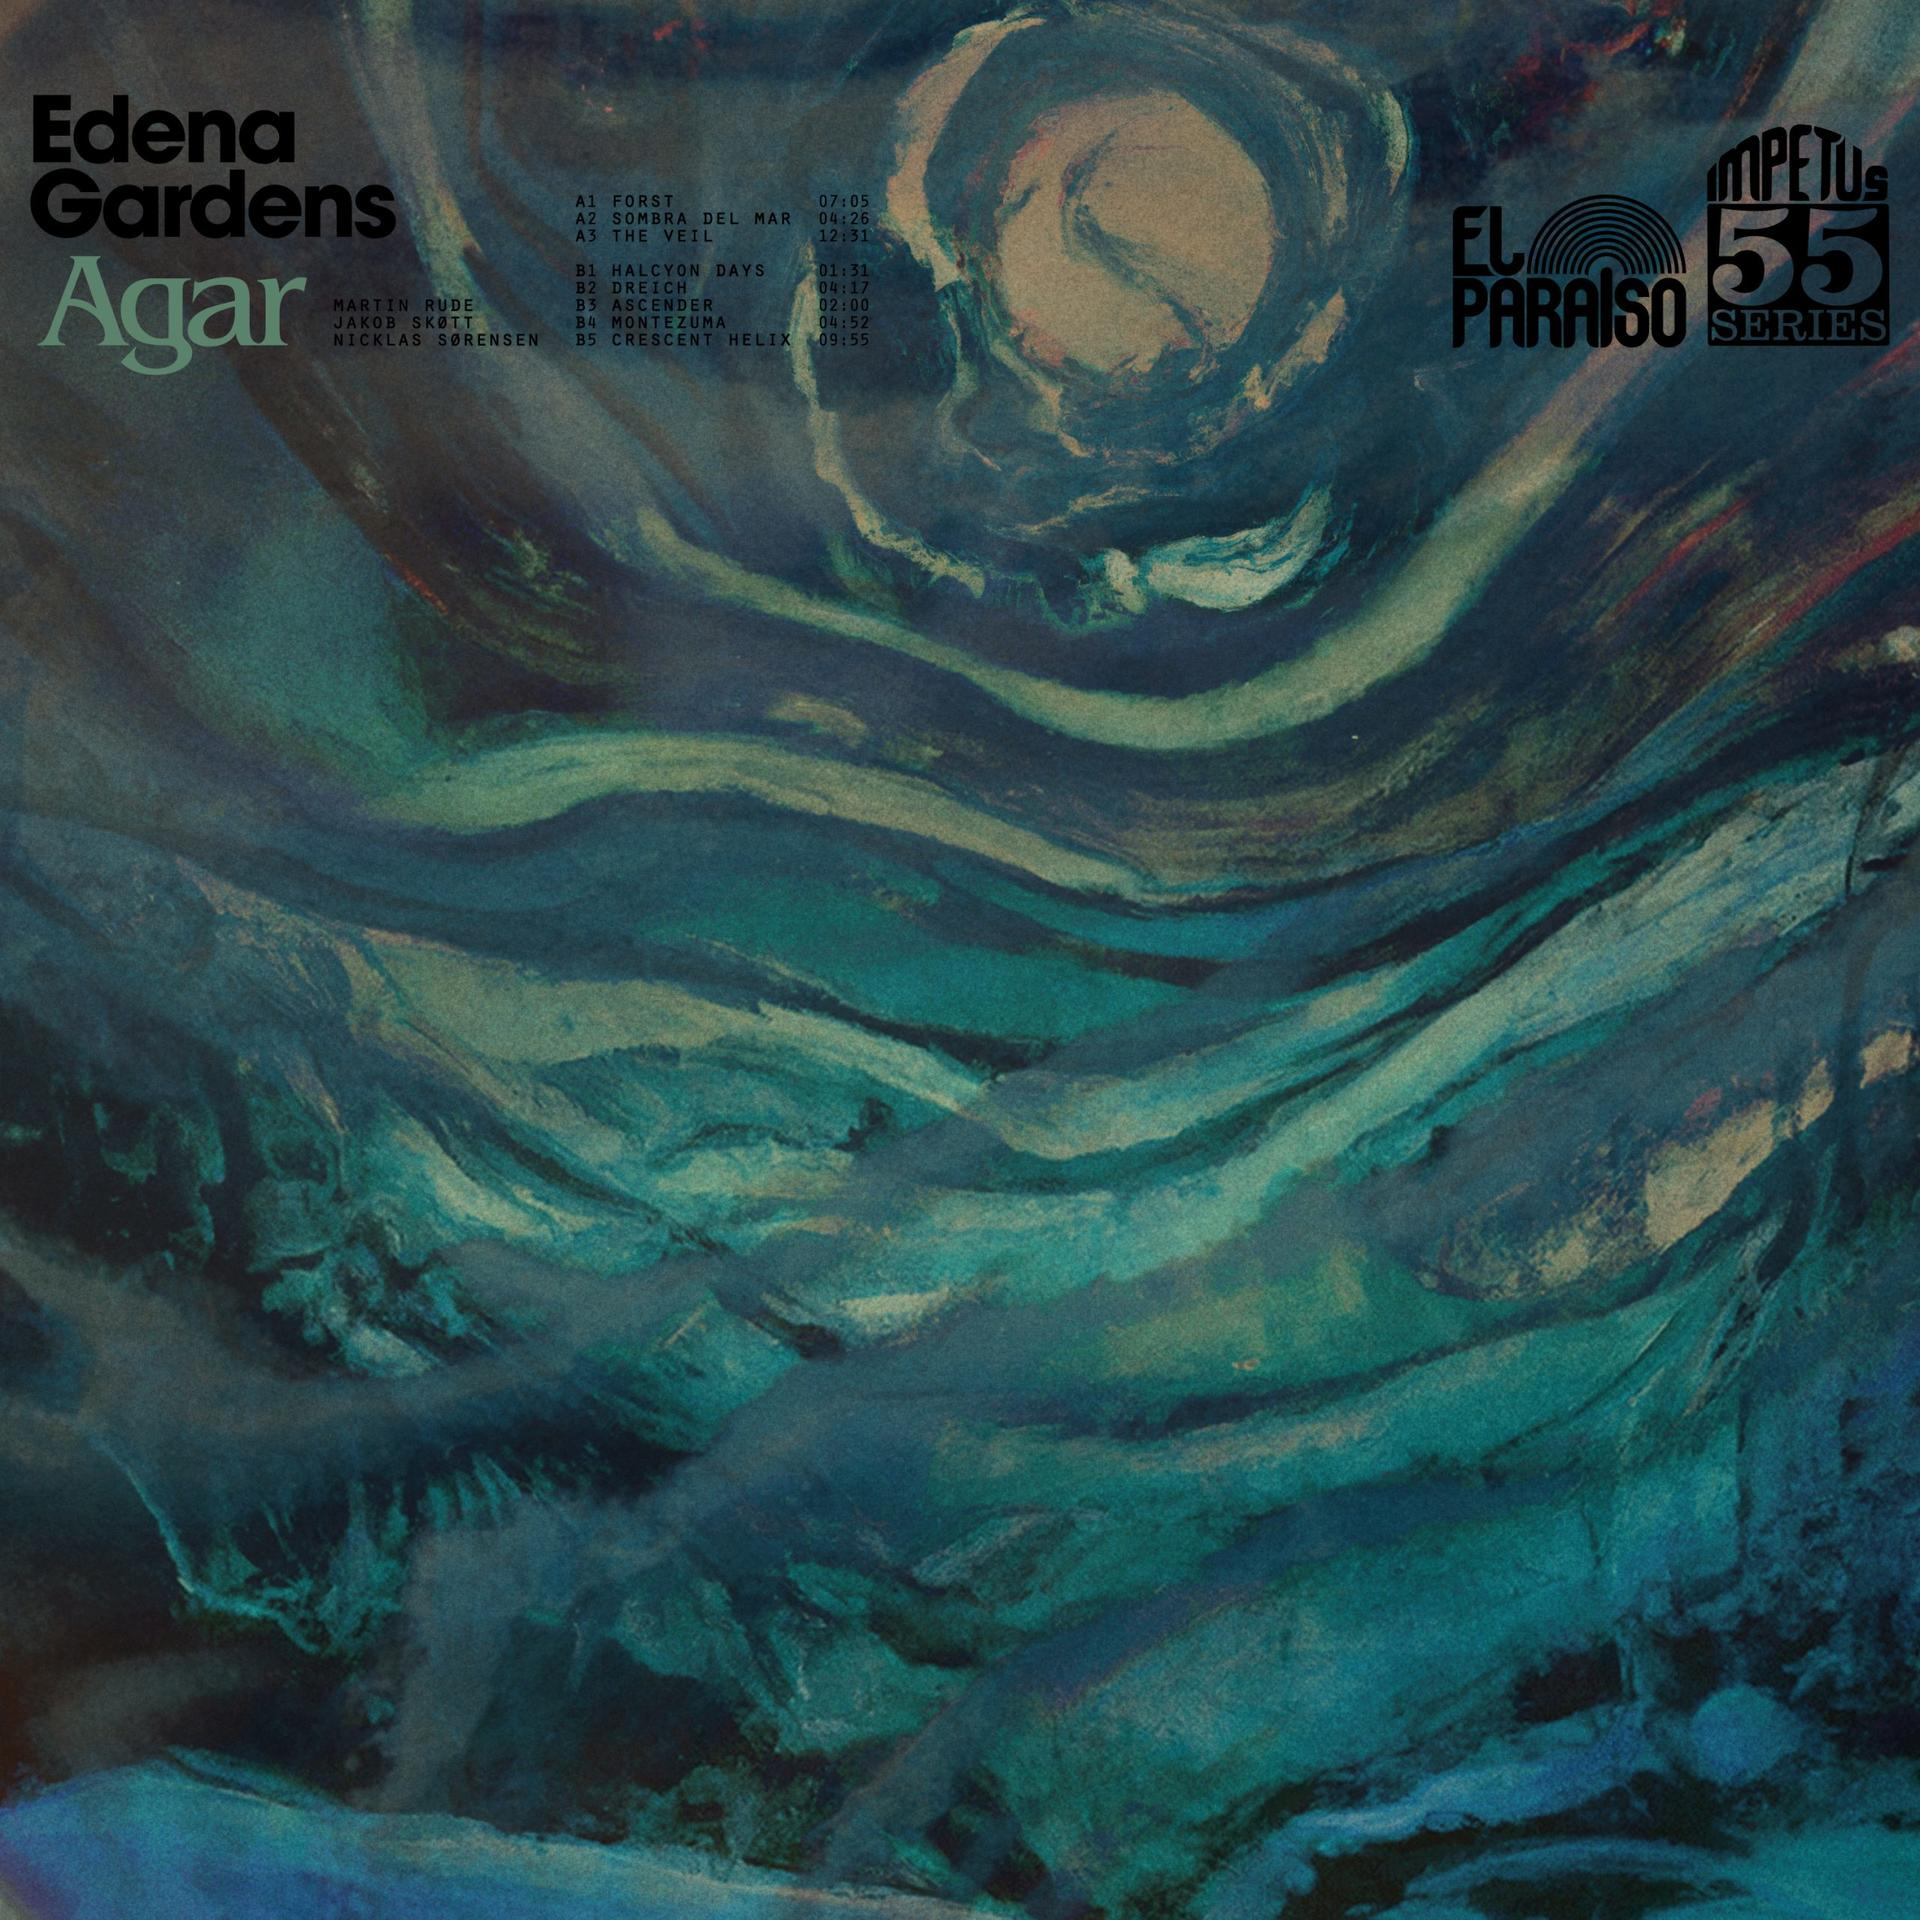 Edena Gardens - (CD) - Agar